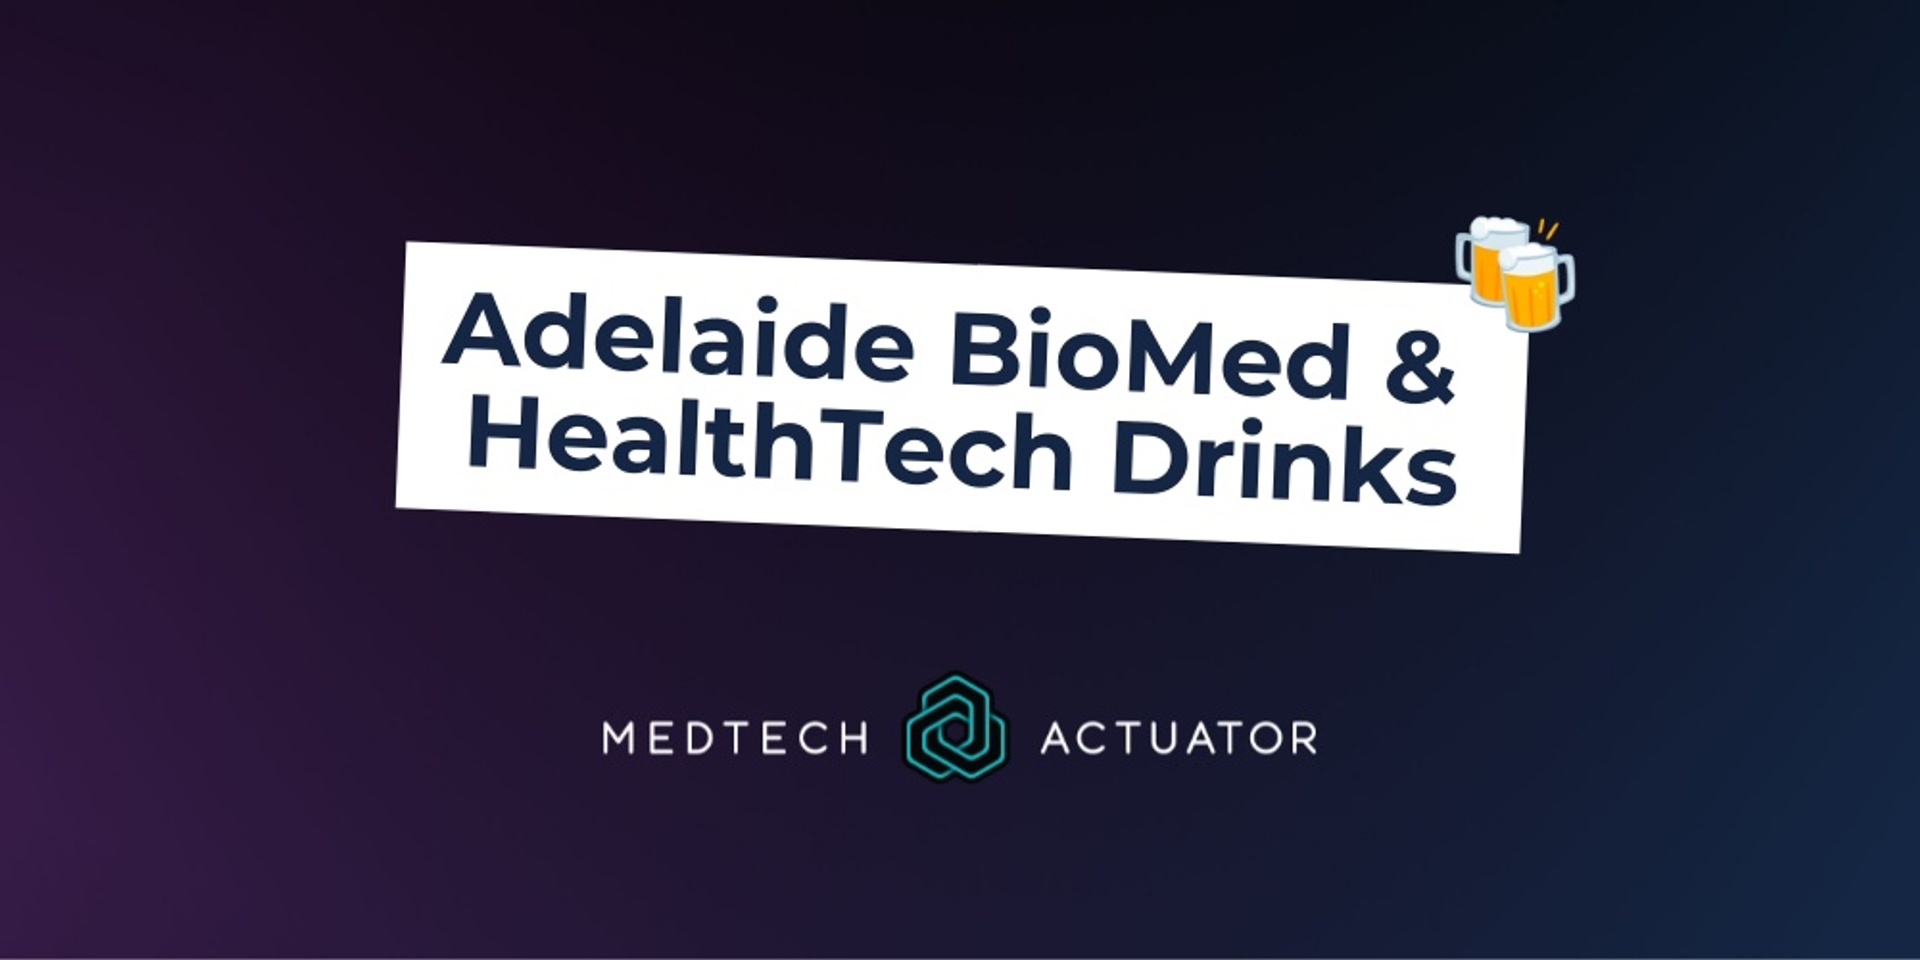 Adelaide BioMed & HealthTech Drinks 🍻